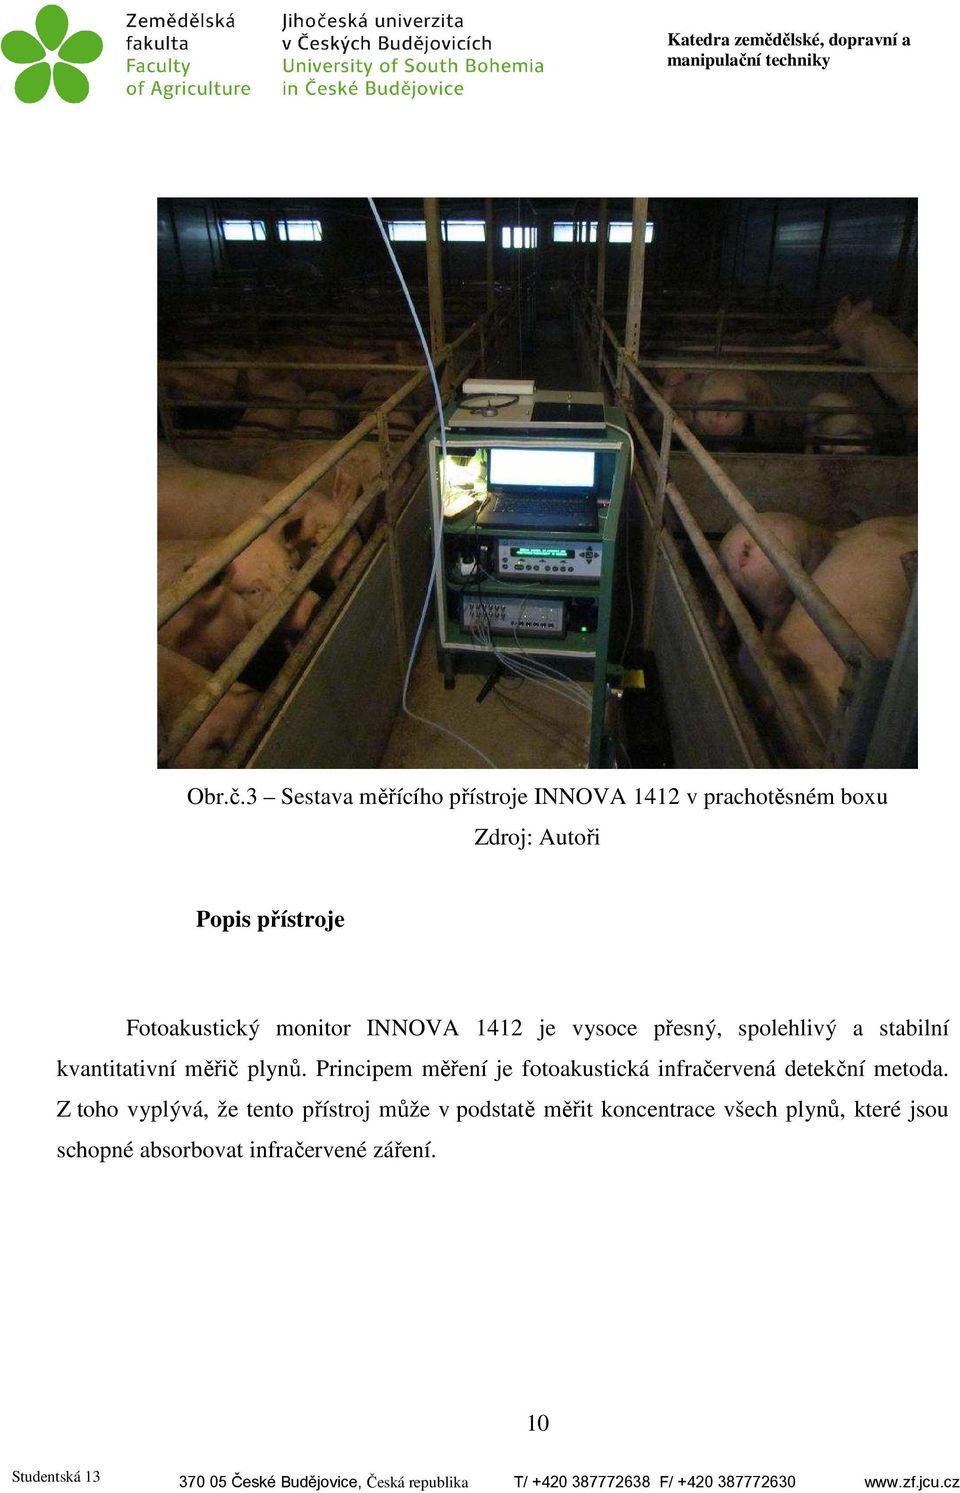 Fotoakustický monitor INNOVA 1412 je vysoce přesný, spolehlivý a stabilní kvantitativní měřič